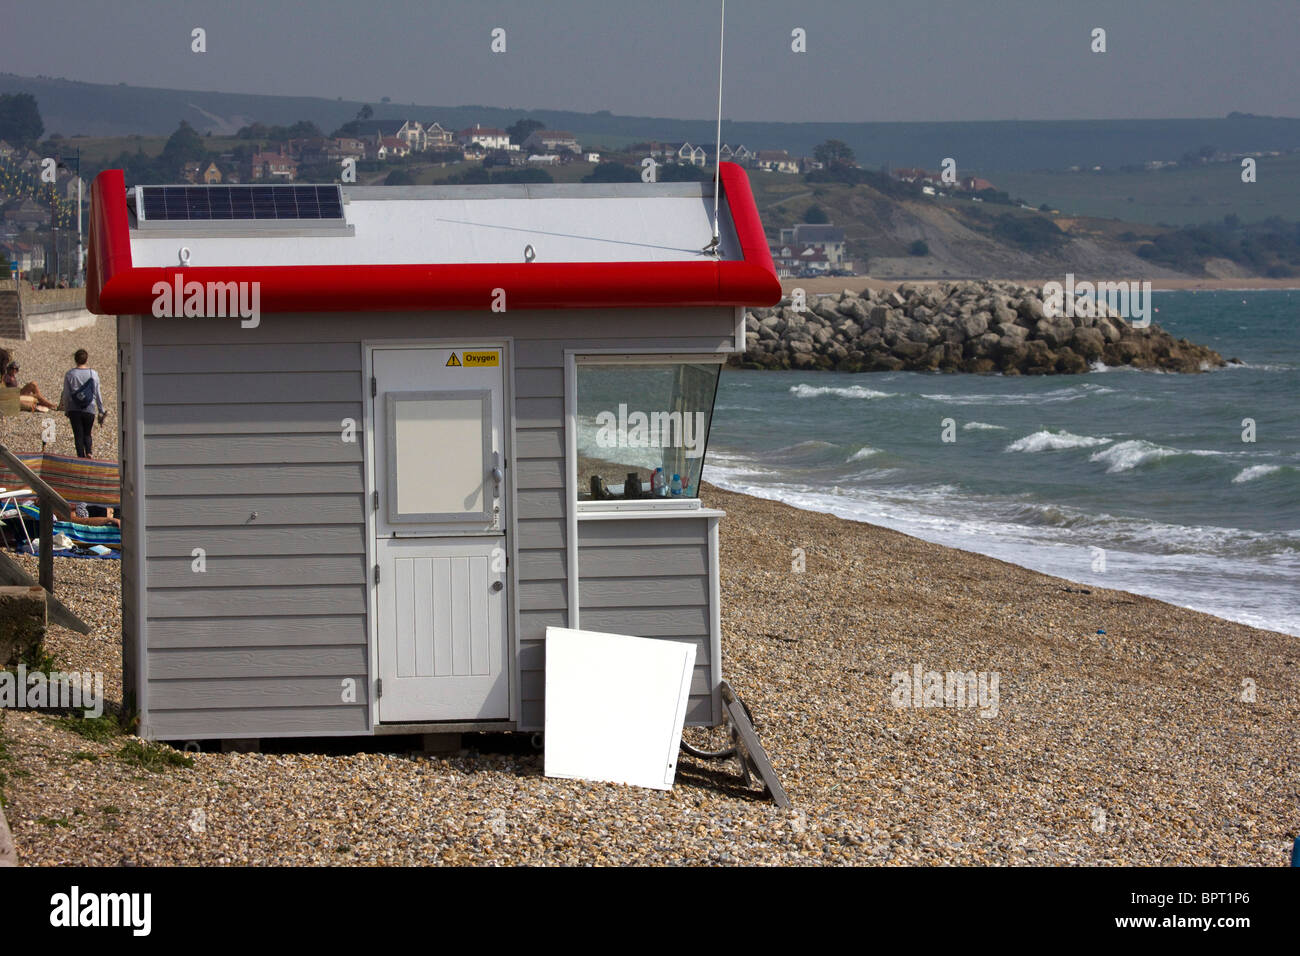 Station de sauvetage de la RNLI moderne plage de Weymouth dorset england uk go Banque D'Images